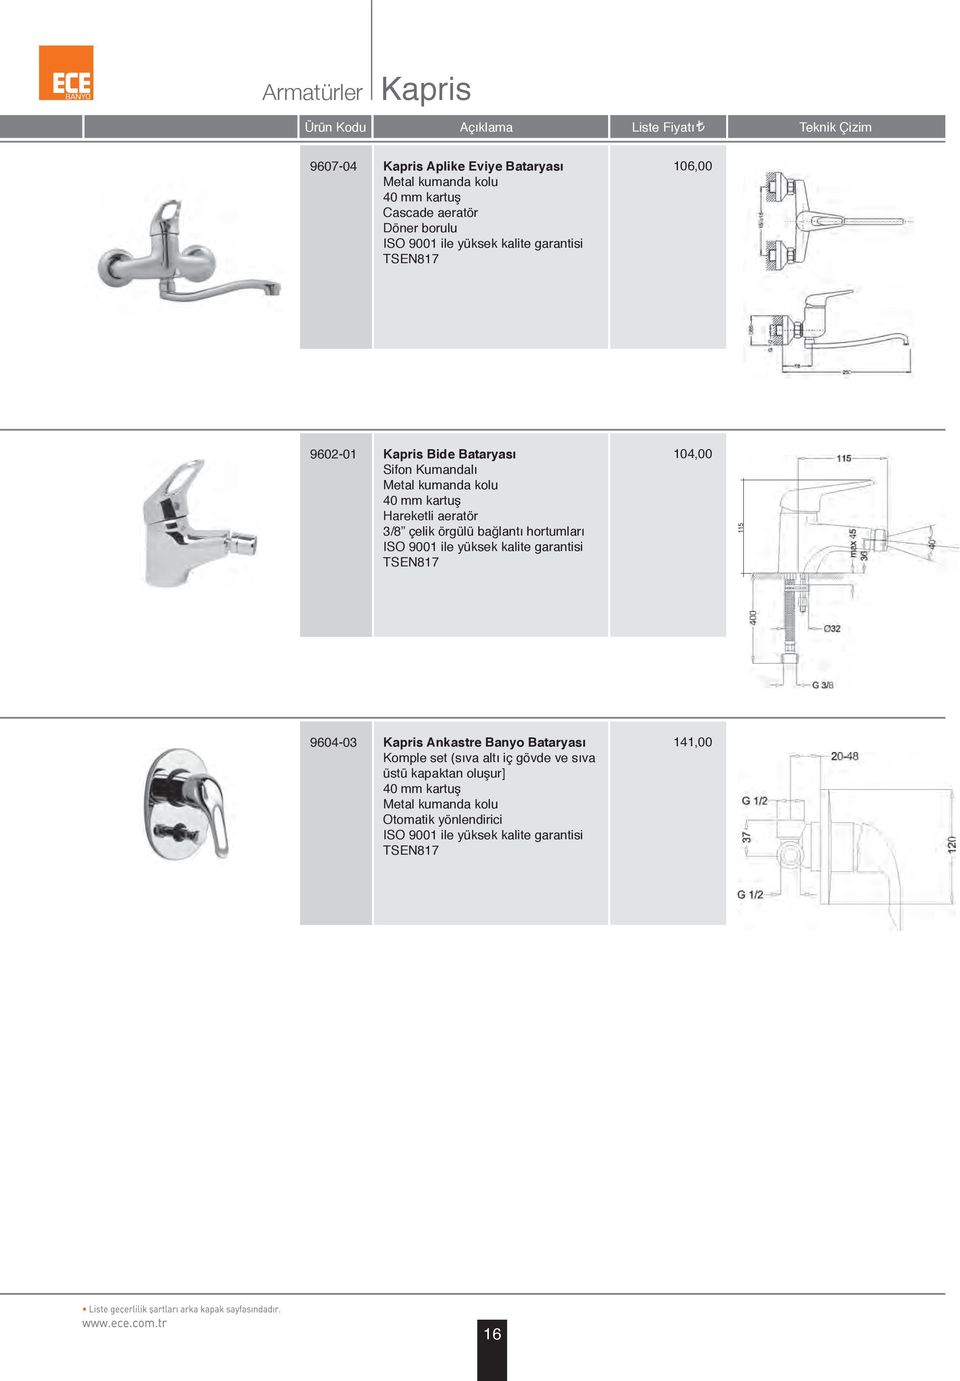 bağlantı hortumları ISO 9001 ile yüksek kalite garantisi TSEN817 104 9604-03 Kapris Ankastre Banyo Bataryası Komple set